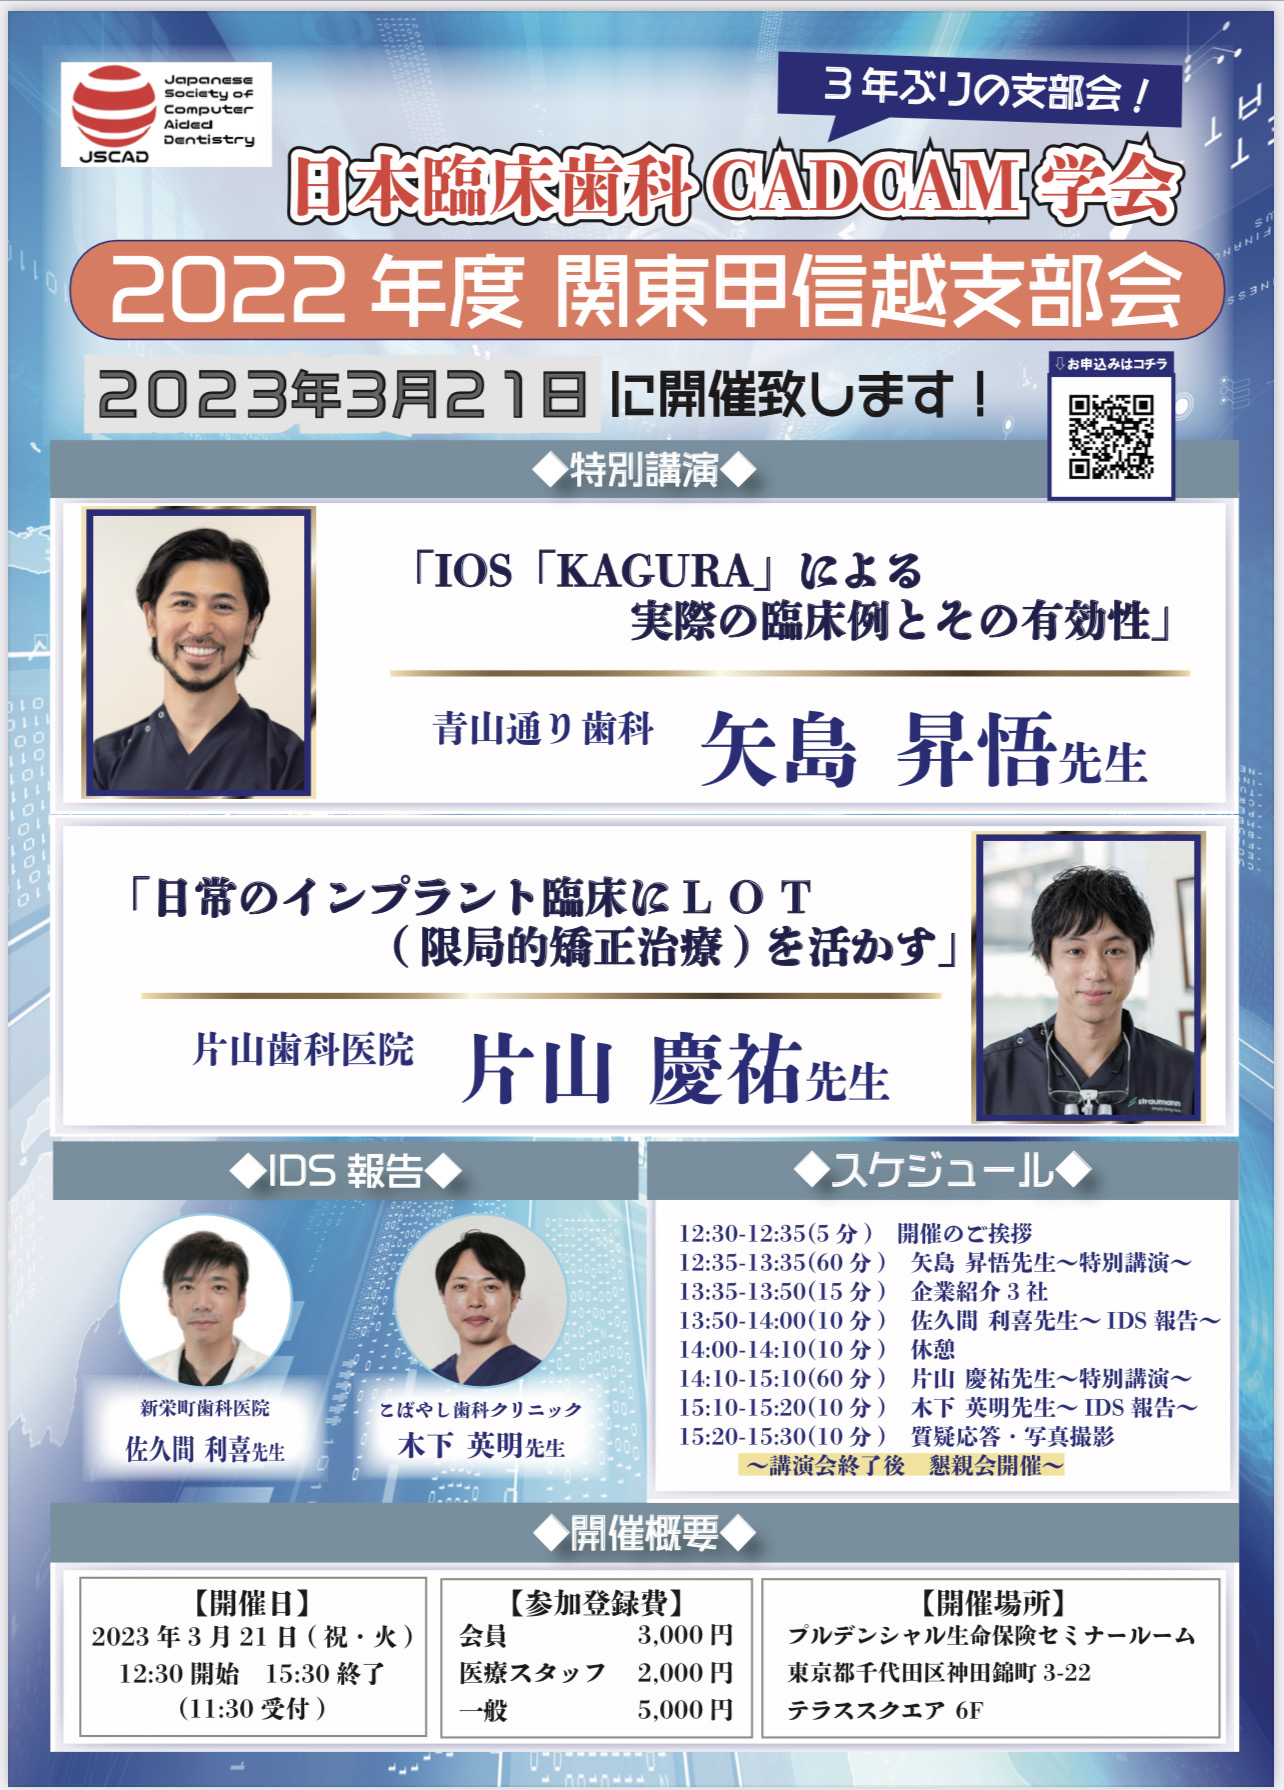 日本臨床歯科CADCAM学会 2023年度 関東甲信越支部会